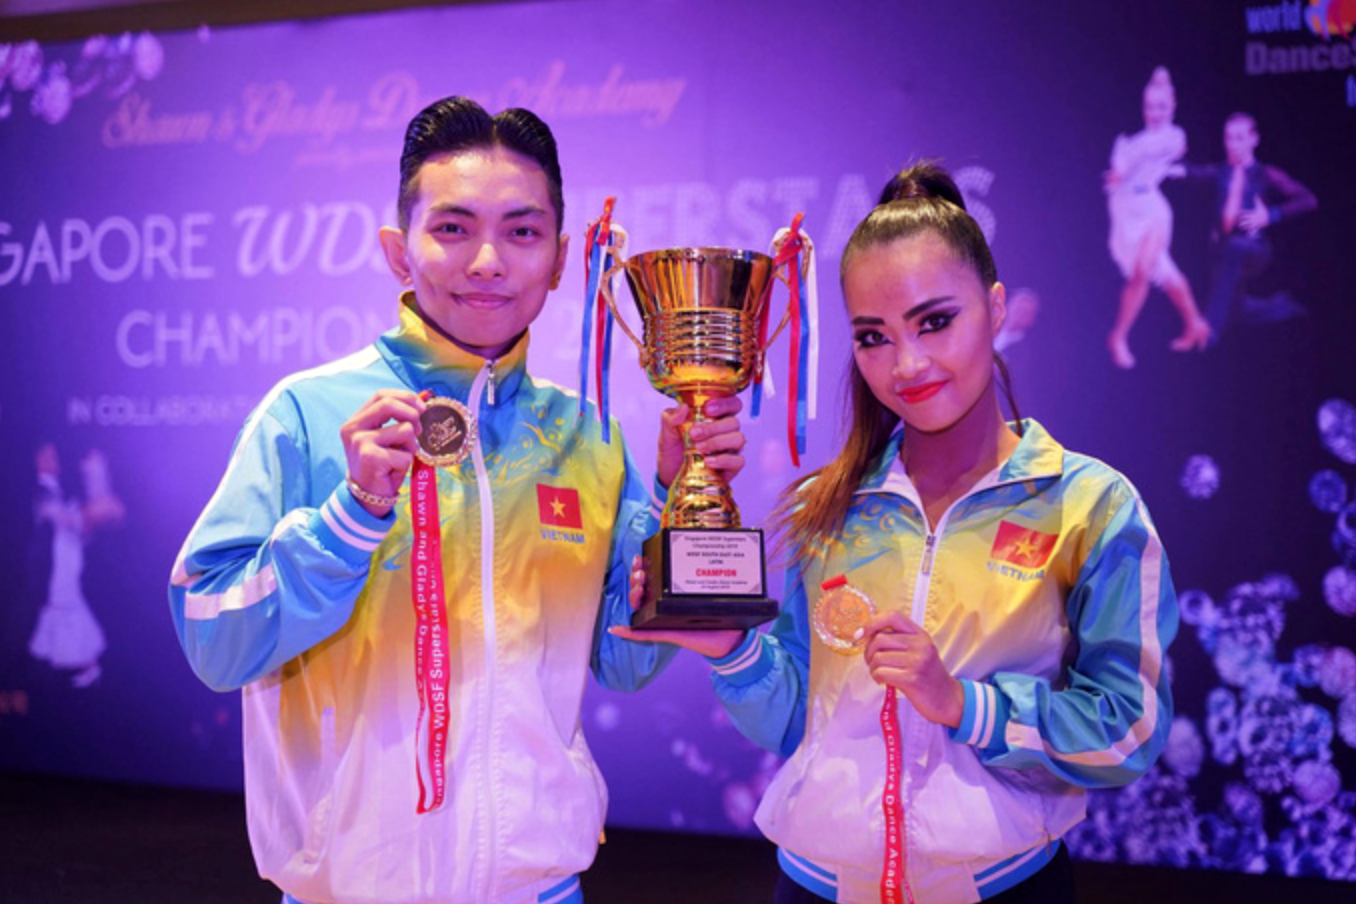 “Nữ hoàng khiêu vũ thể thao” Khánh Thi làm HLV của chồng tại SEA Games 30